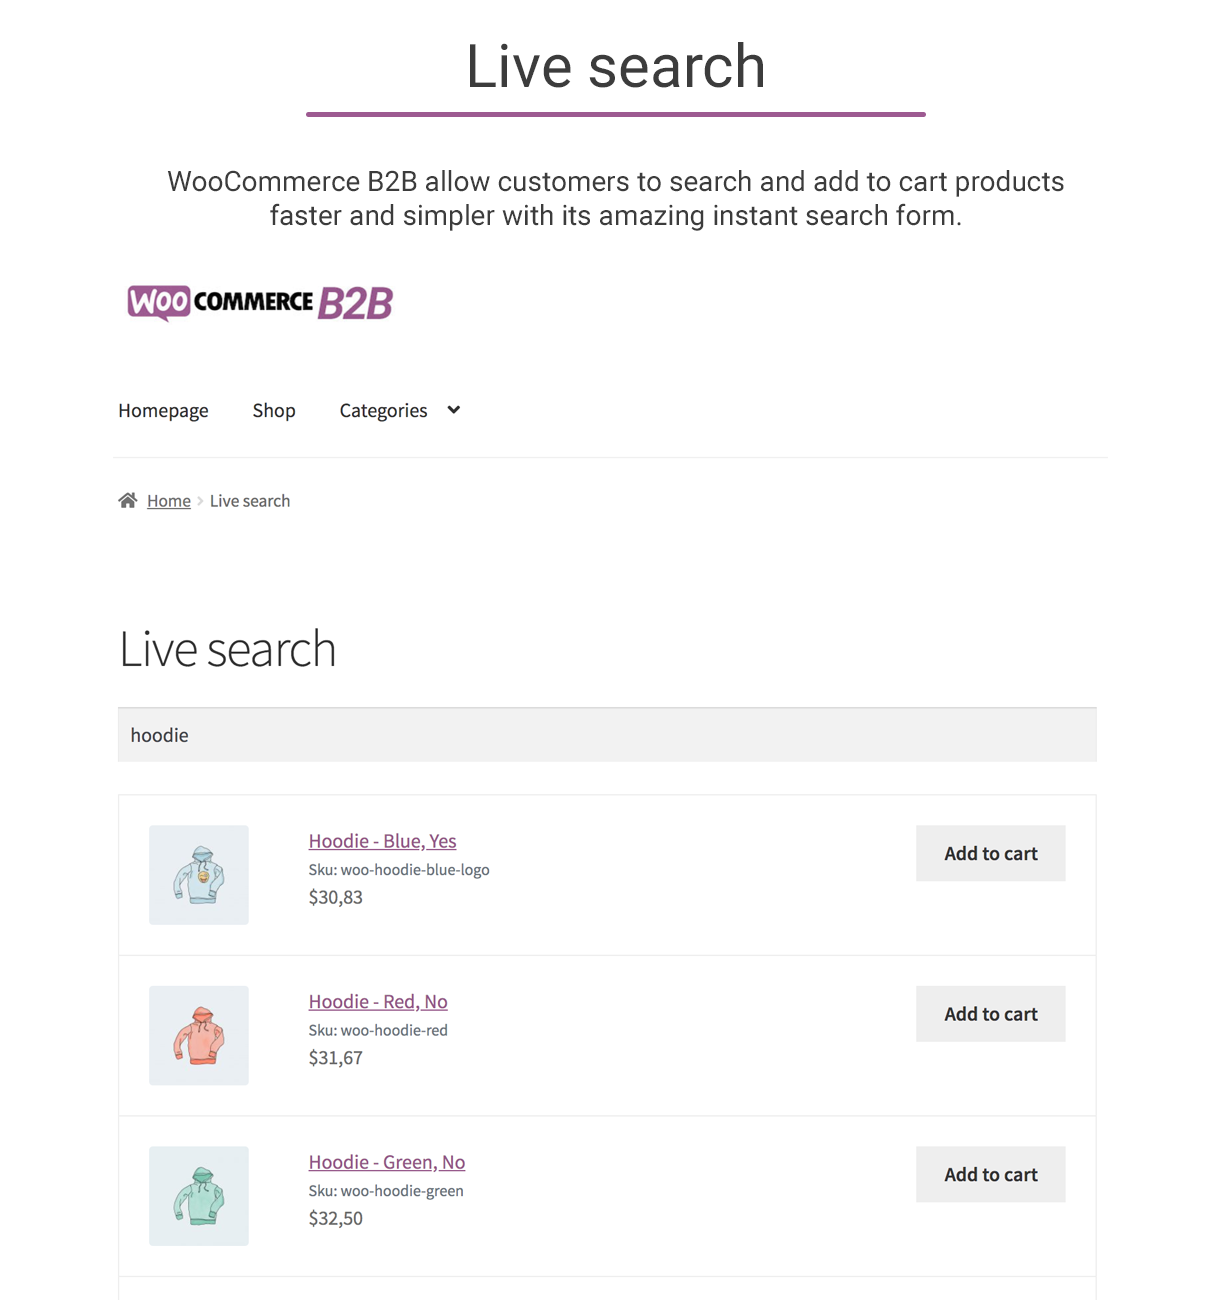 WooCommerce B2B - Live search